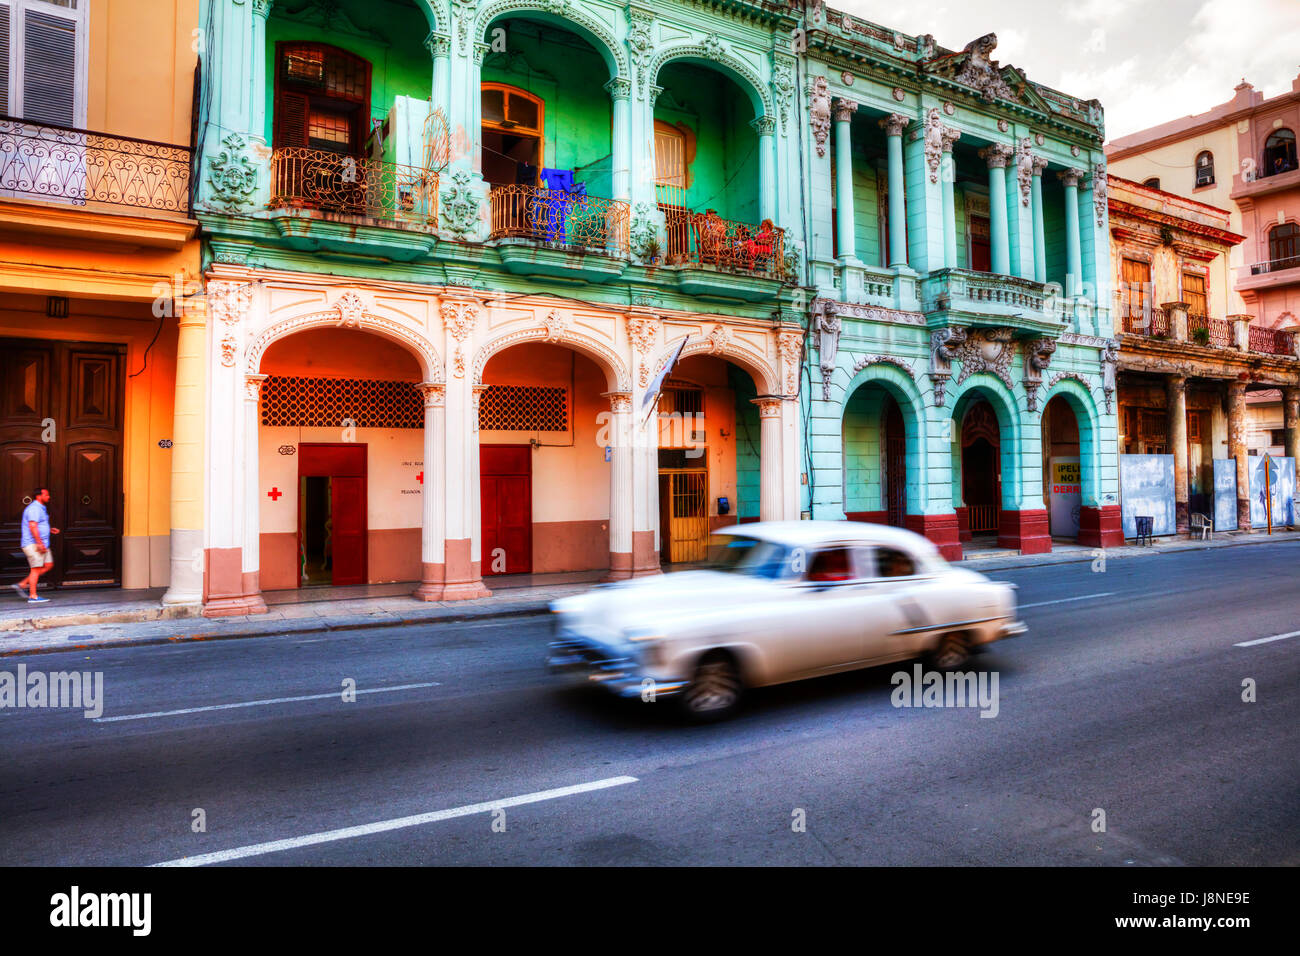 Alten Oldtimer auf der Malecon Havanna Kuba, der Malecon La Habana Cuba, Malacon Kuba, Classic American Auto der Malecon Kuba Straße Straßen von Kuba Stockfoto